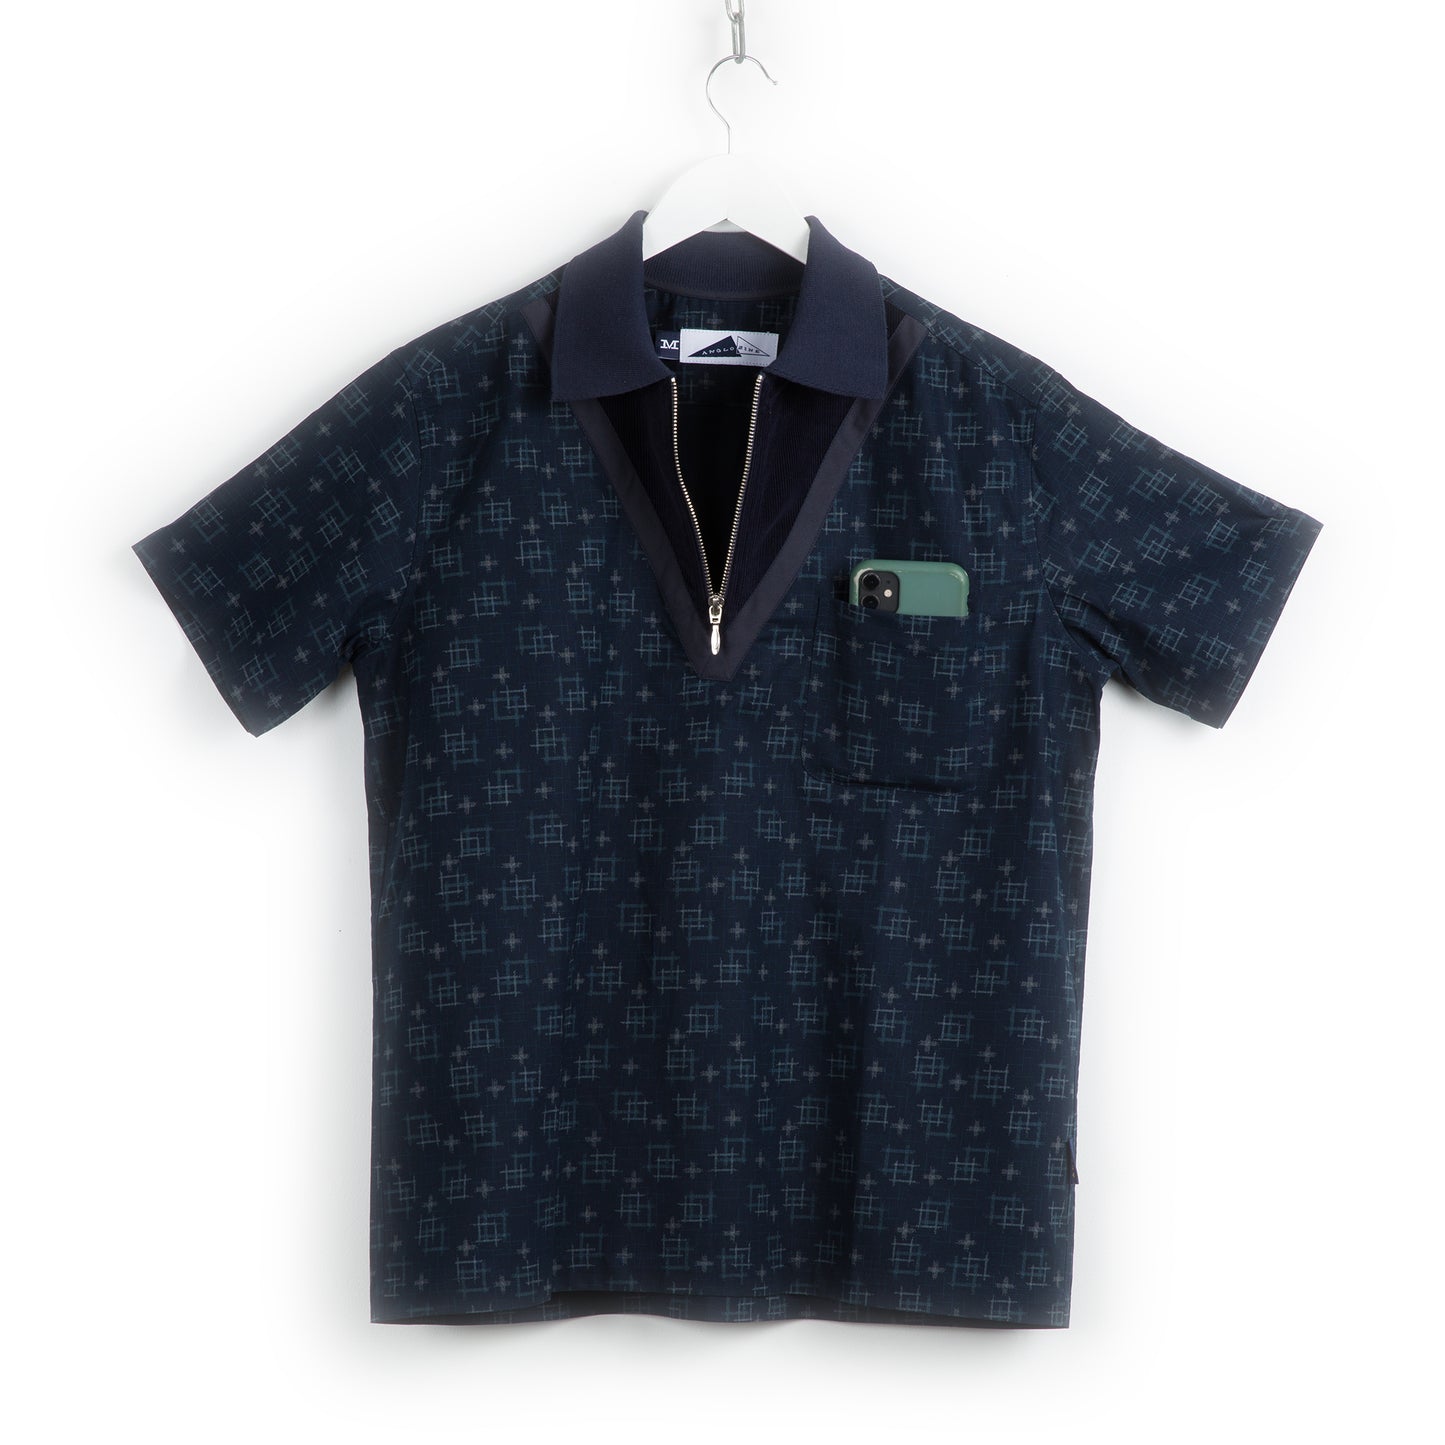 Sedona Shirt - Double Navy